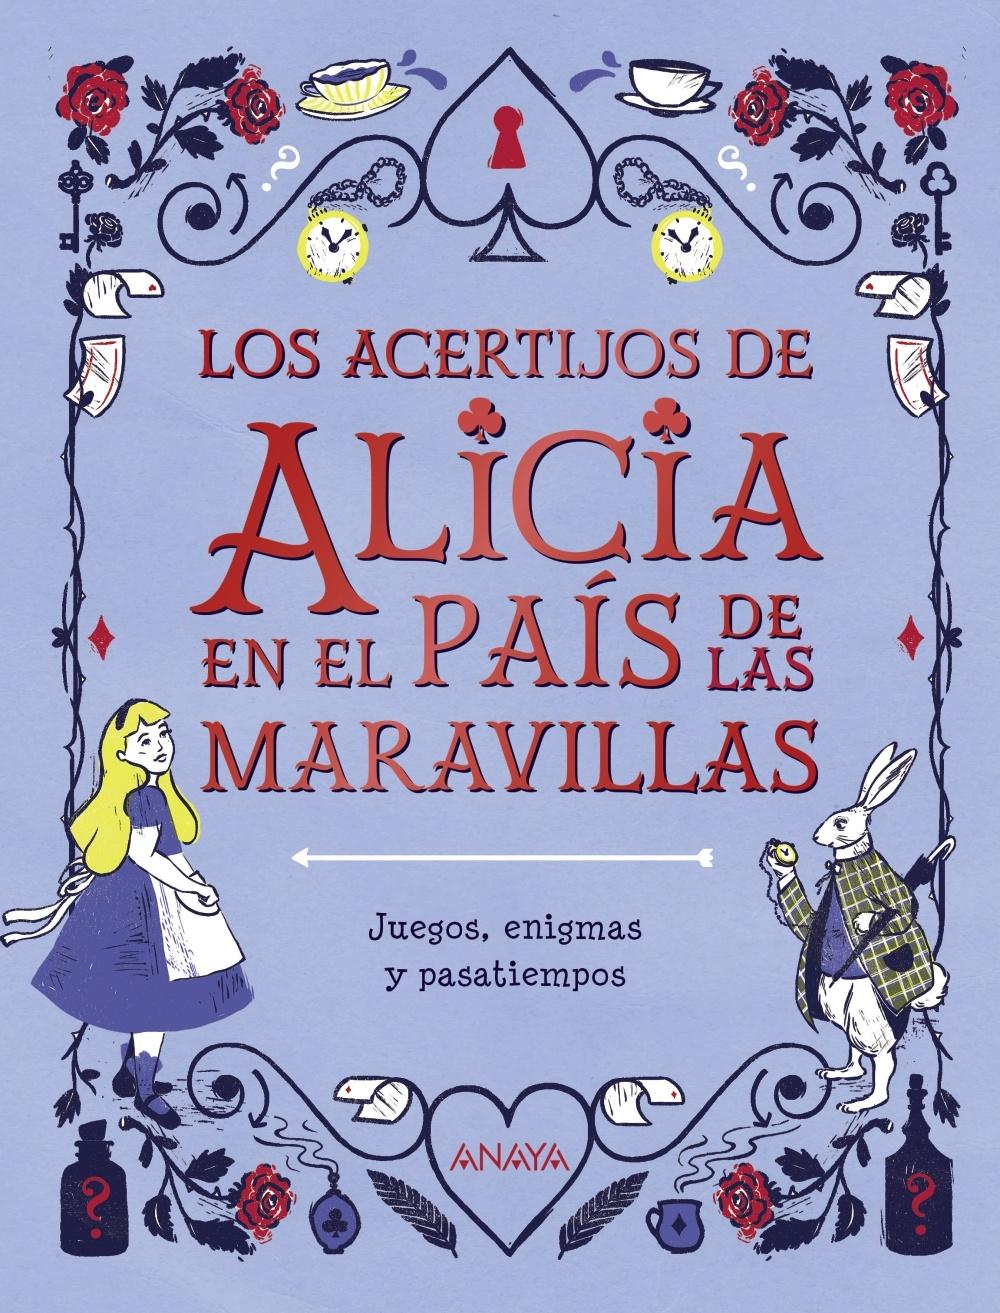 Los acertijos de Alicia e  el País de las Maravillas "Juegos, enigmas y pasatiempos"